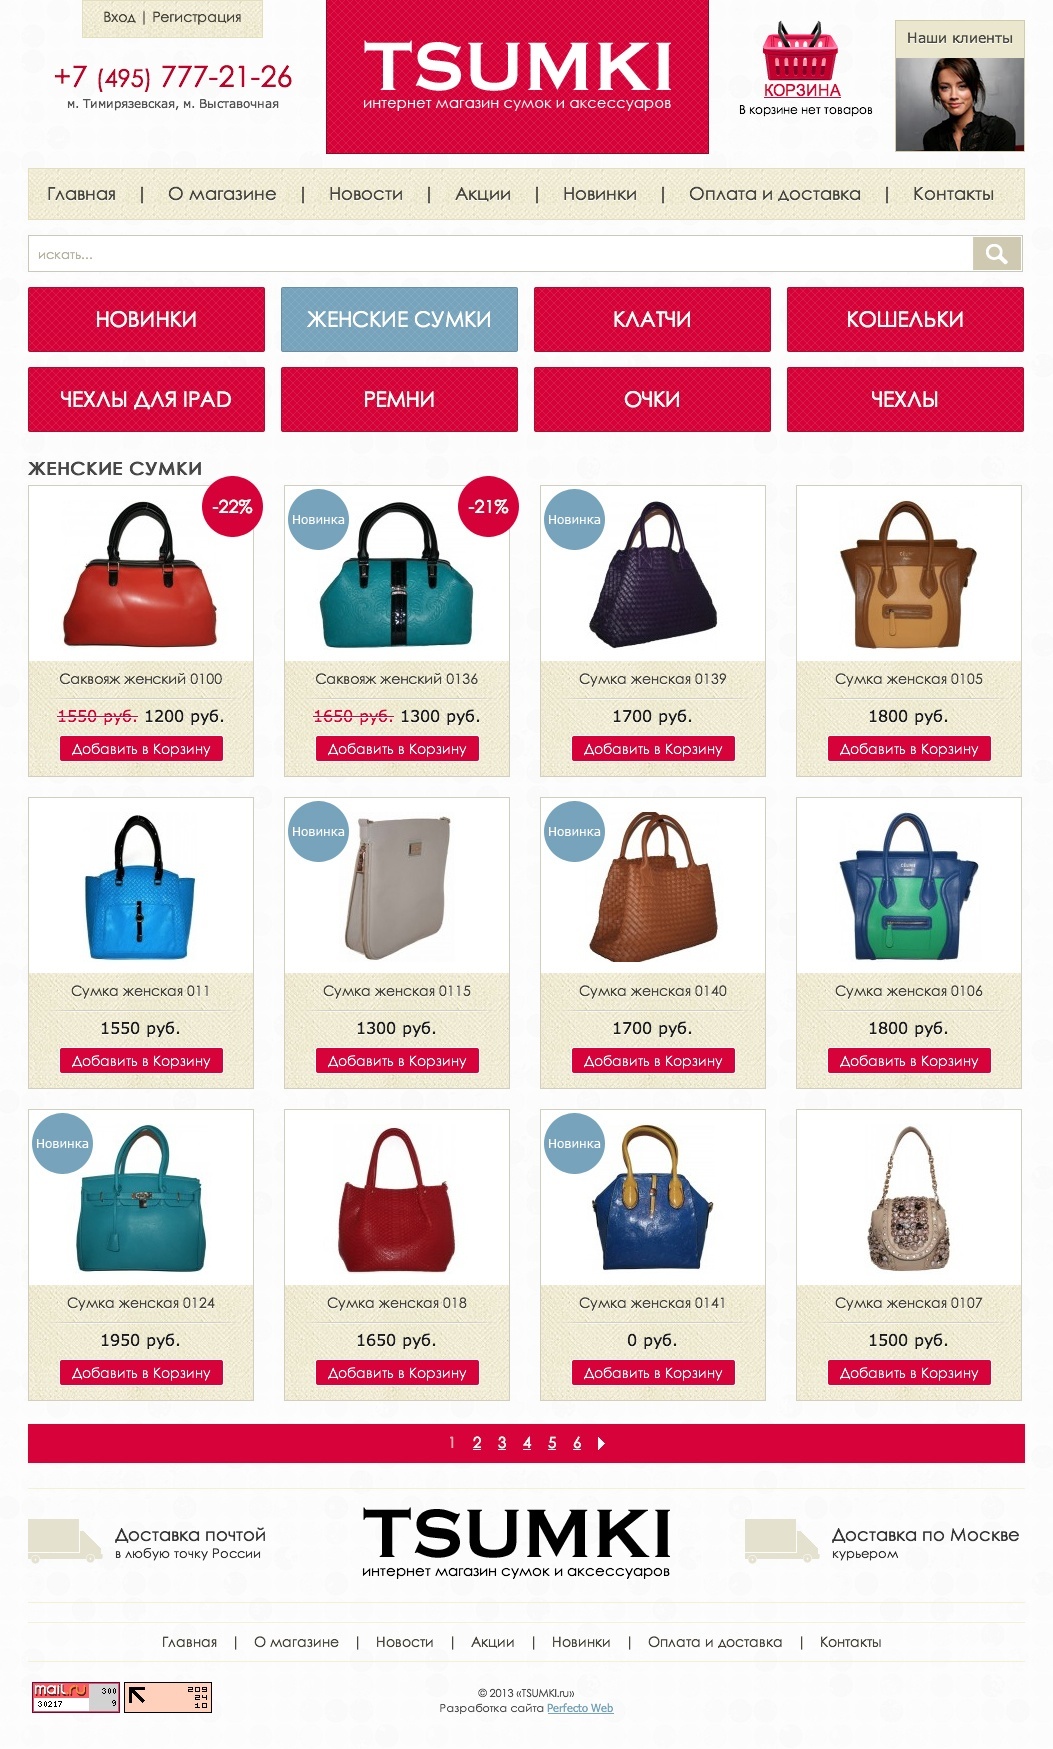 Tsumki - интернет магазин сумок и аксессуаров №2- Страница каталога товаров